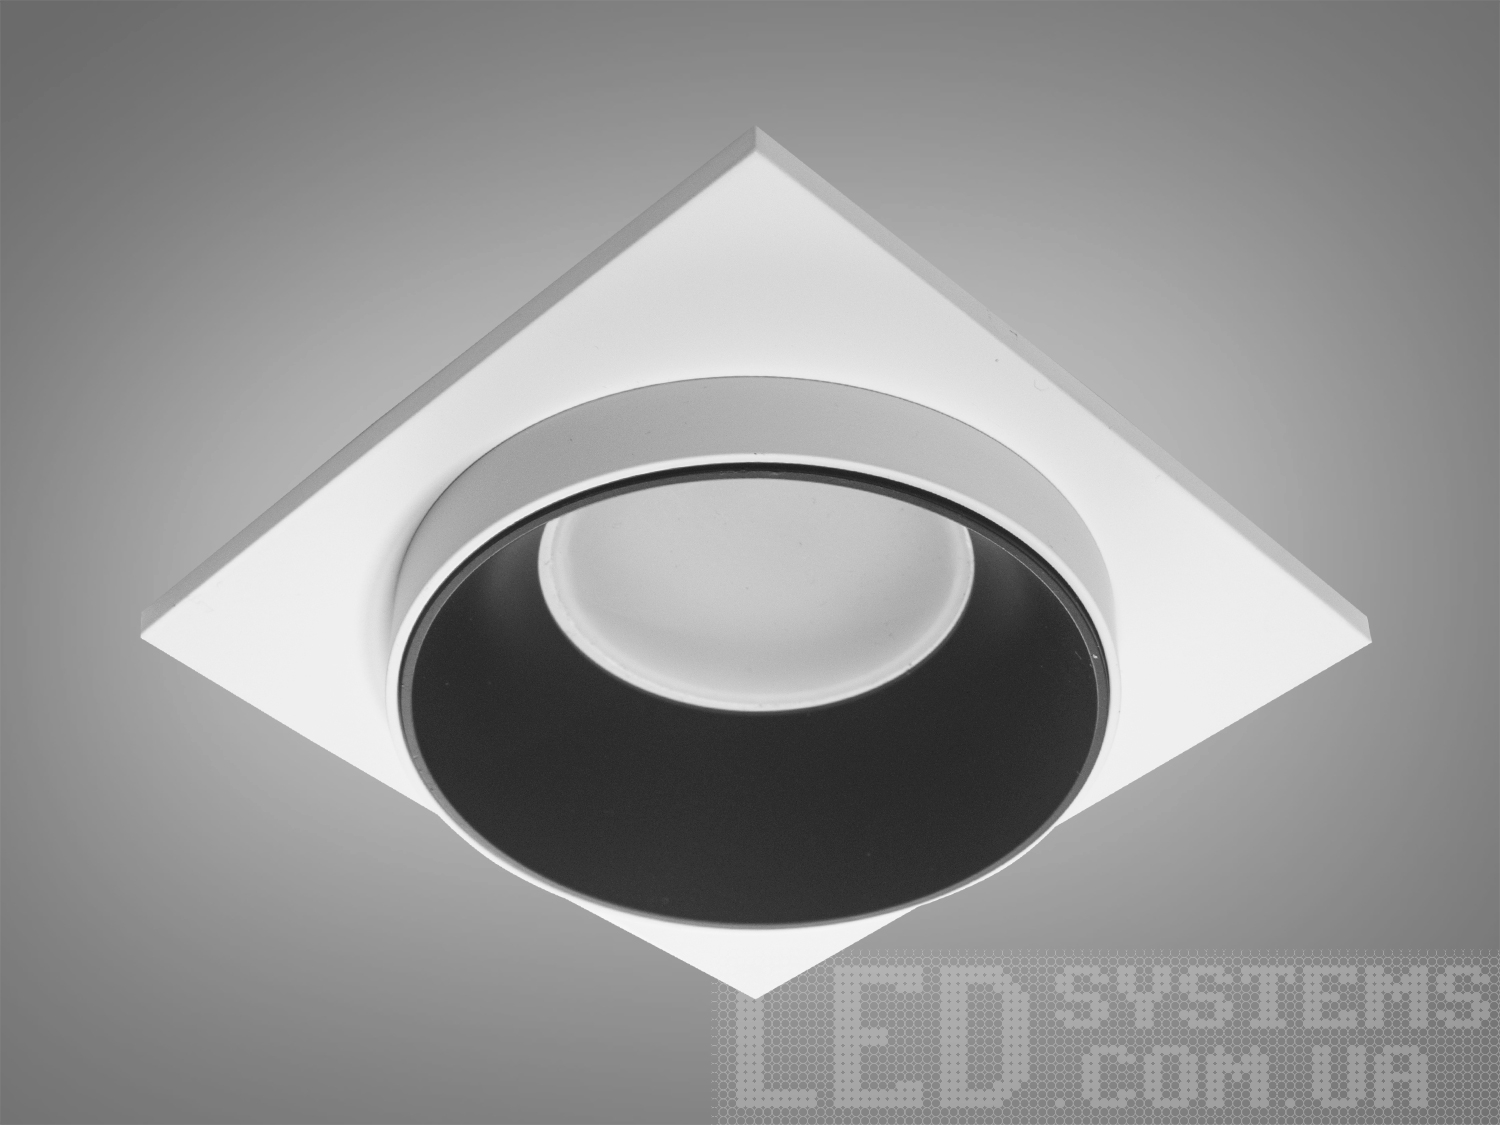 Нова серія точкових світильників дозволить зробити Вашу квартиру стильною та сучасною. Дані світильники ідеально підходять для світлодіодних ламп, які забезпечують найкращі параметри освітлення та енергозбереження, дозволяючи дизайнеру інтер'єру можливість для креативу. 
Точковий світильник - це спеціальний вбудований світильник, який використовується для спрямованого або загального підсвічування певних ділянок Вашої квартири. Їх застосовують на кухні, у ванній кімнаті, для освітлення сходів та у житлових кімнатах. При рівномірному розподілі різних джерел світла (наприклад: люстра в центрі кімнати + точкові світильники по краю стелі) ви можете досягти ефекту відсутності тіні і зорово збільшити простір кімнати. Куди б Ви не подивилися, точкові світильники будуть висвітлювати простір перед Вами та всі предмети, що Вас оточують. 
Алюмінієві світильники не схильні до корозії, добре відводять тепло від лампи. 
Лампа до комплекту не входить. 